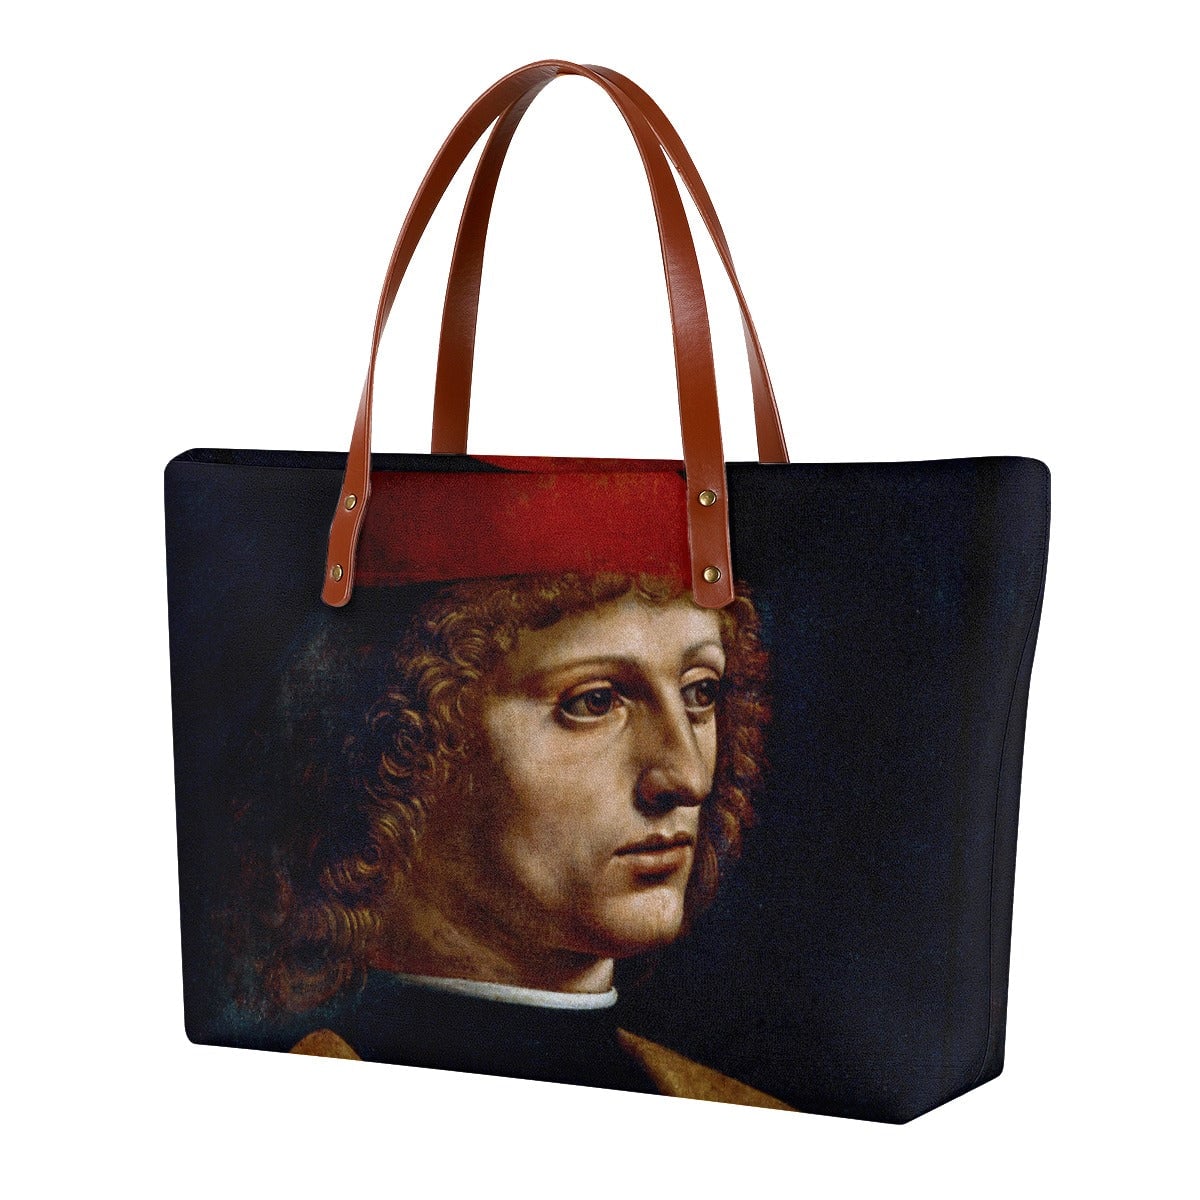 Leonardo da Vinci’s The Portrait of a Musician Tote Bag